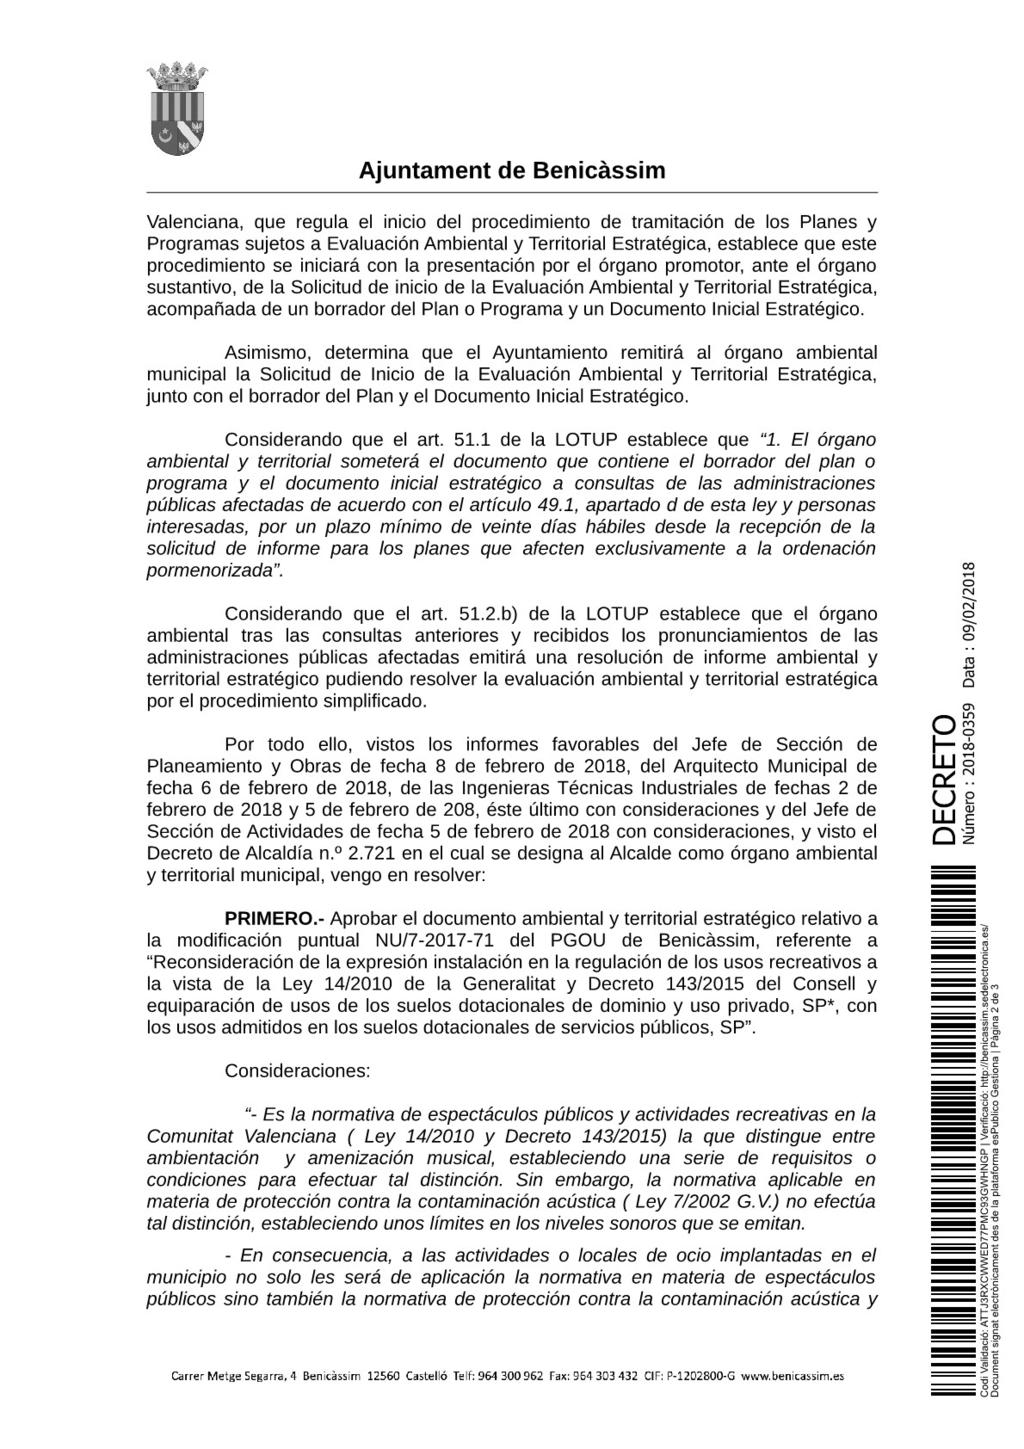 Página 10 de 13 Document signat electrònicament des